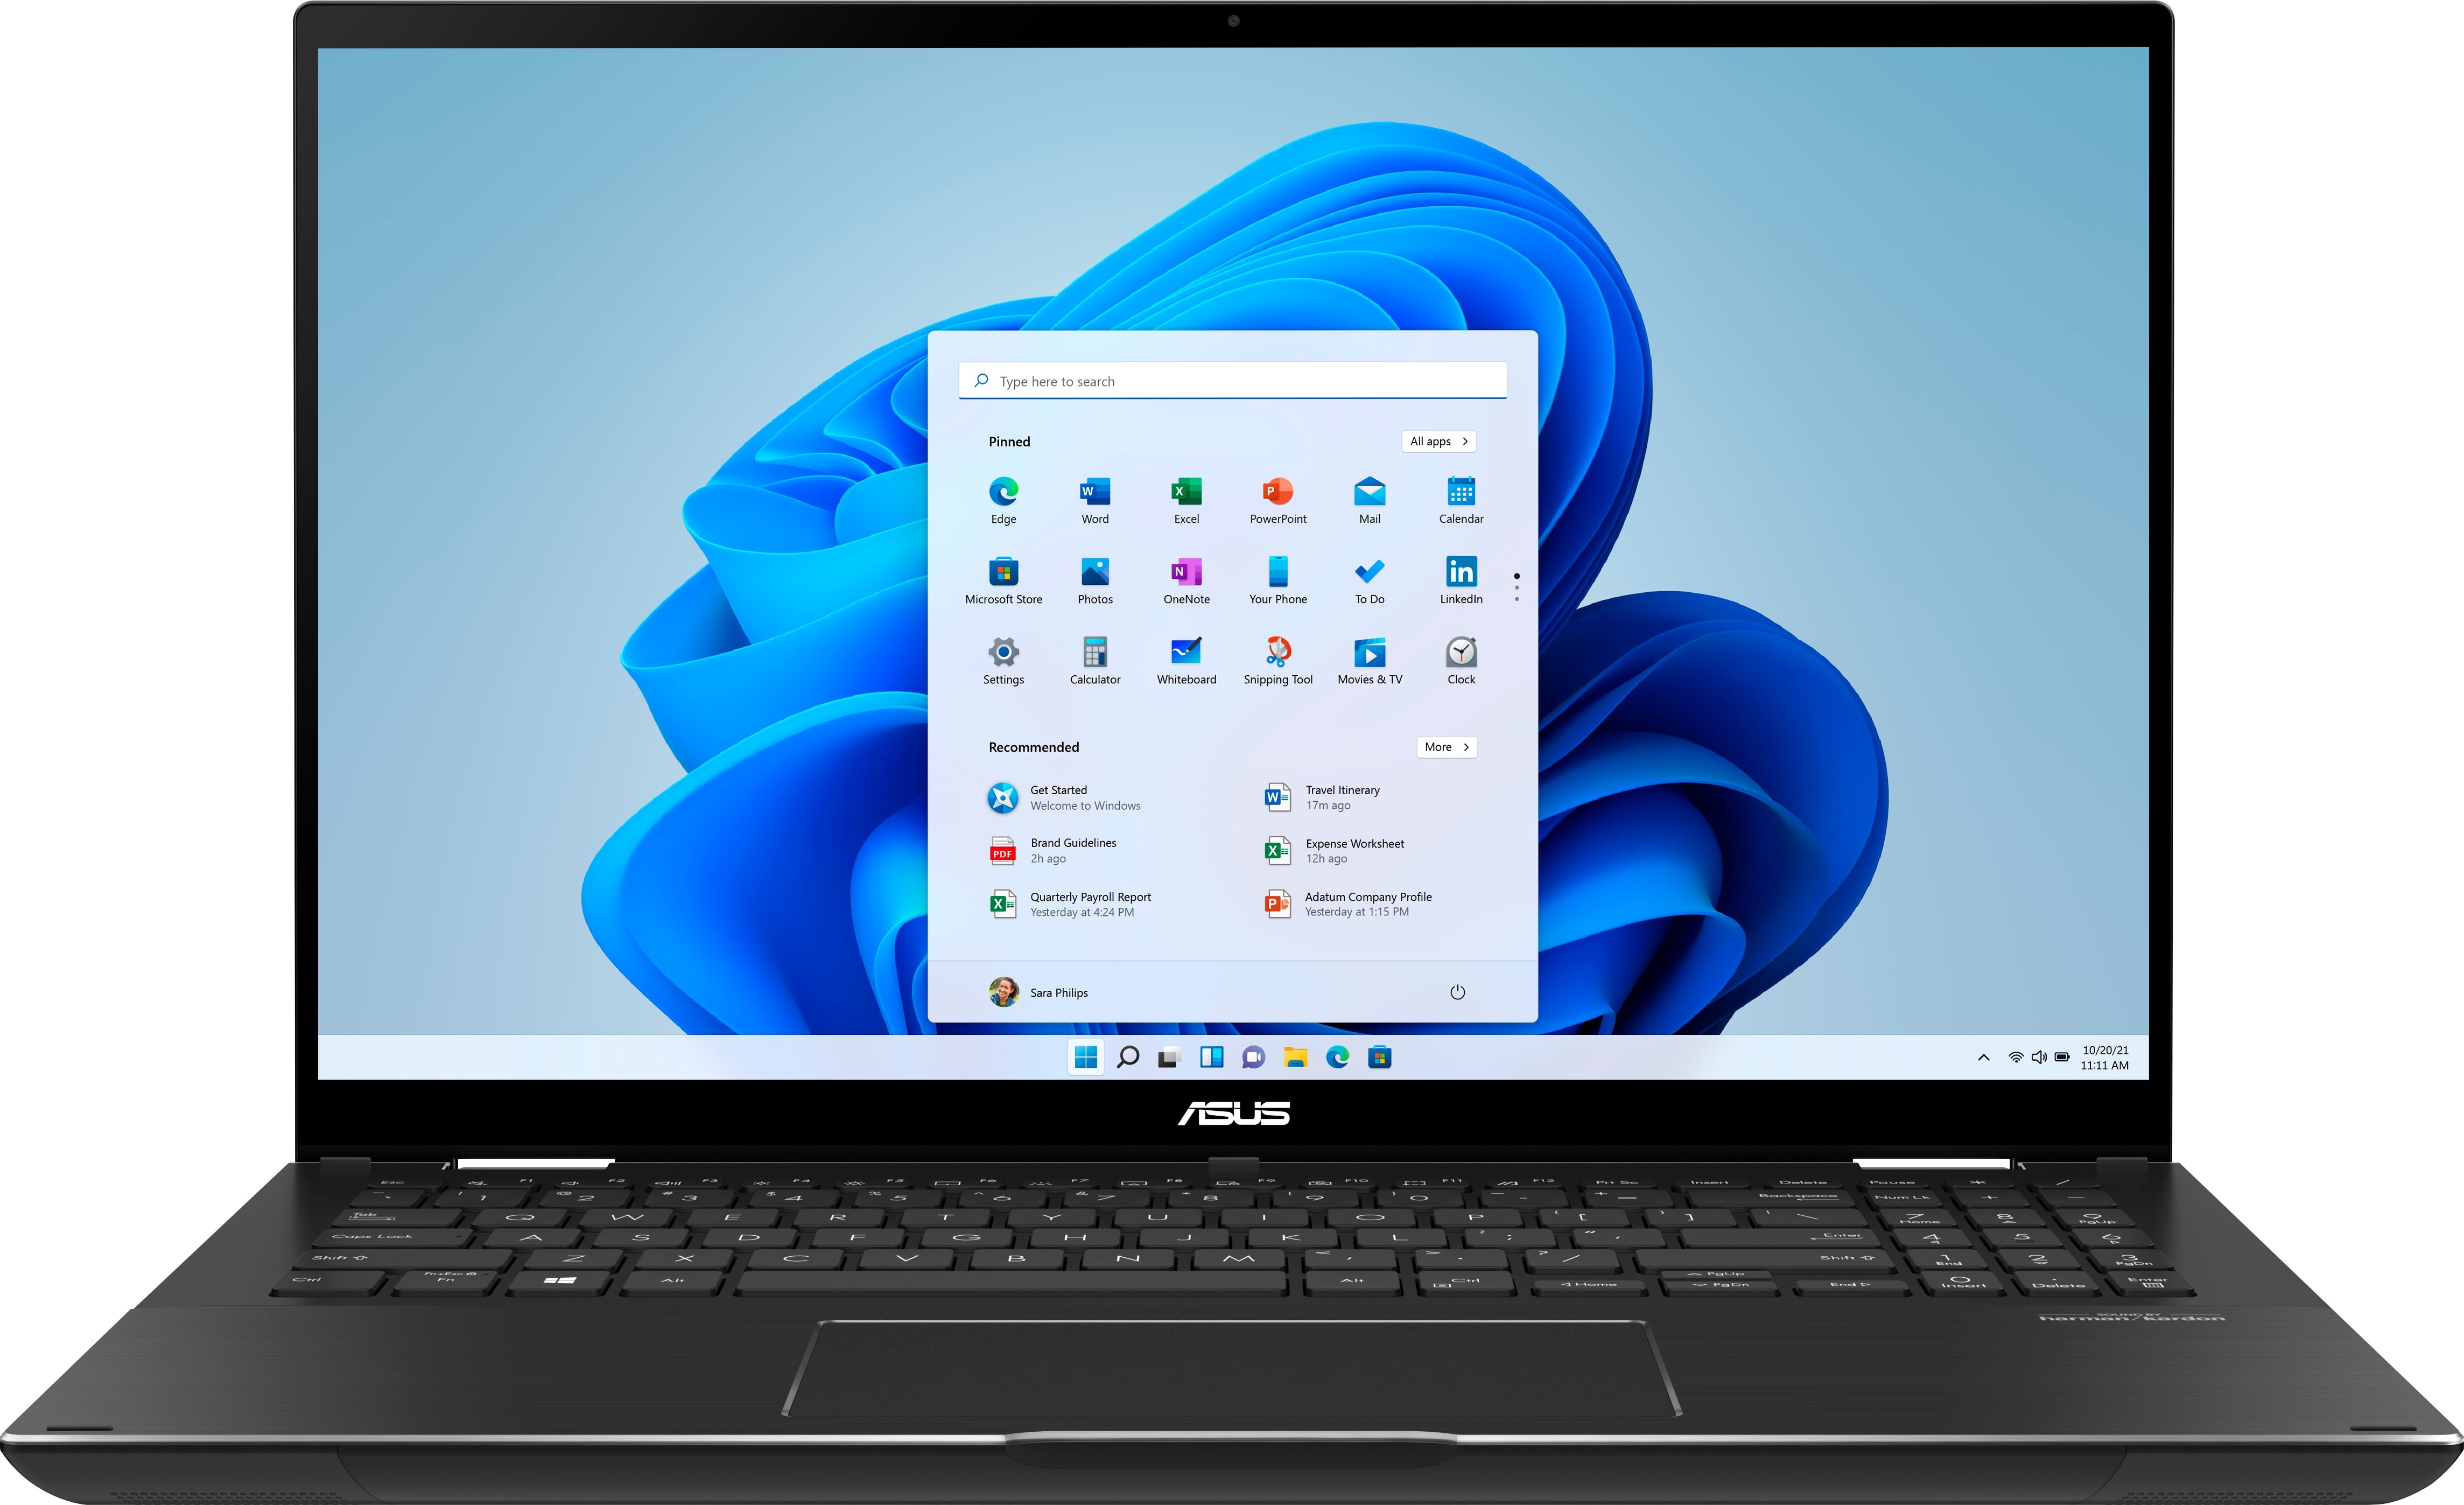 Asus ZenBook Flip 15 review